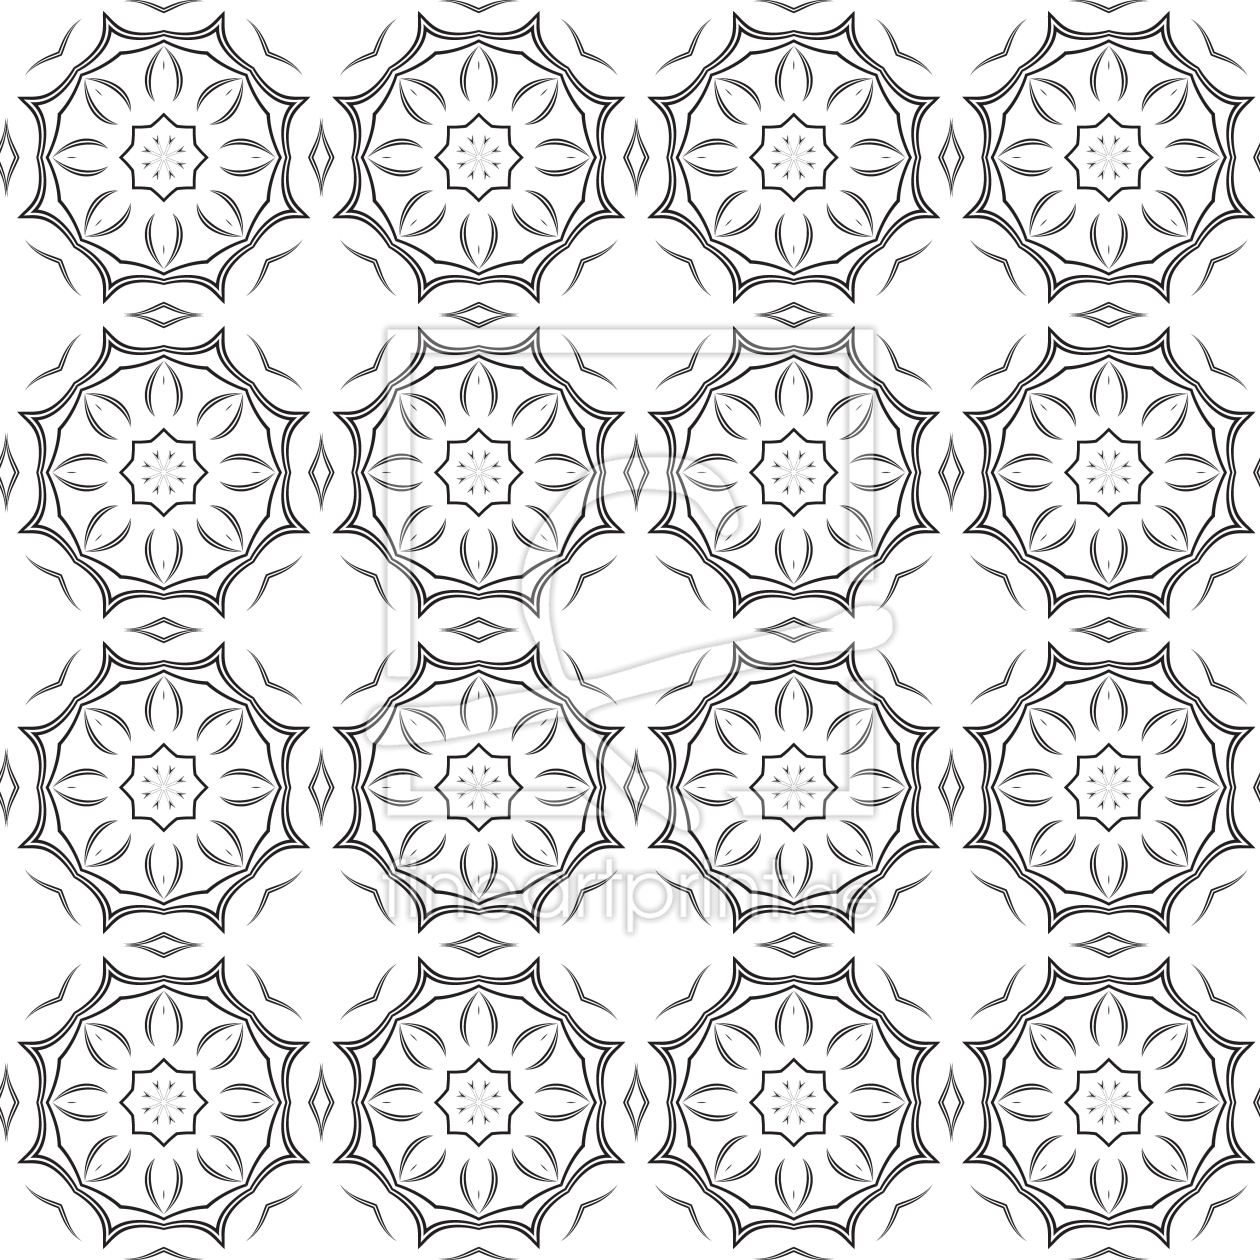 Bild-Nr.: 9007847 Verbundene Kreise erstellt von patterndesigns-com